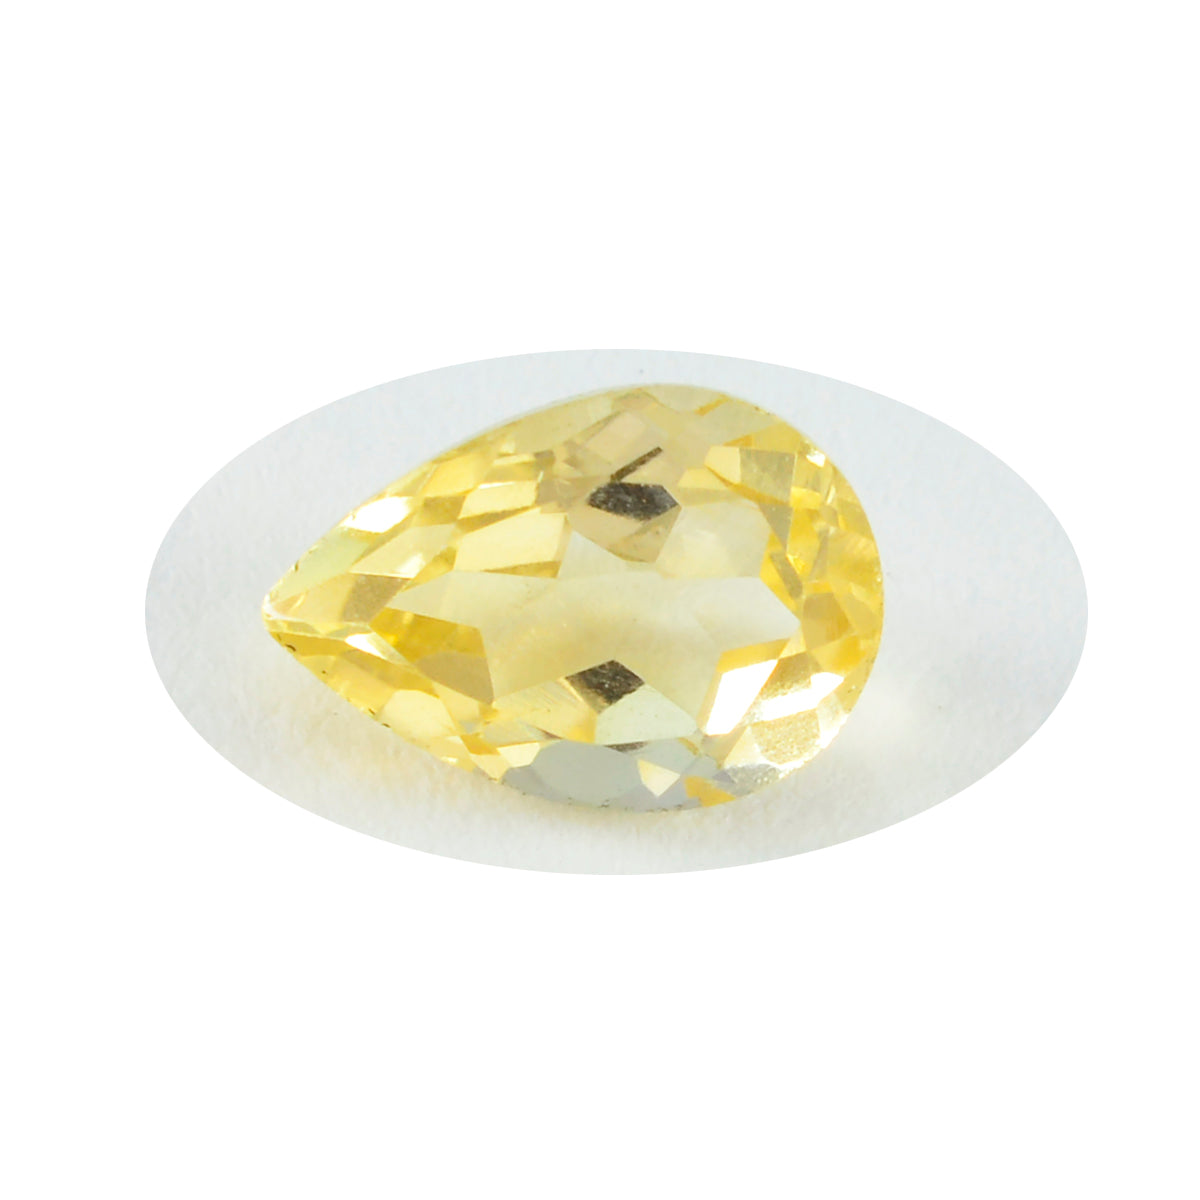 Riyogems 1 pièce de citrine jaune naturelle à facettes 7x10mm en forme de poire, pierres précieuses de qualité fantastique